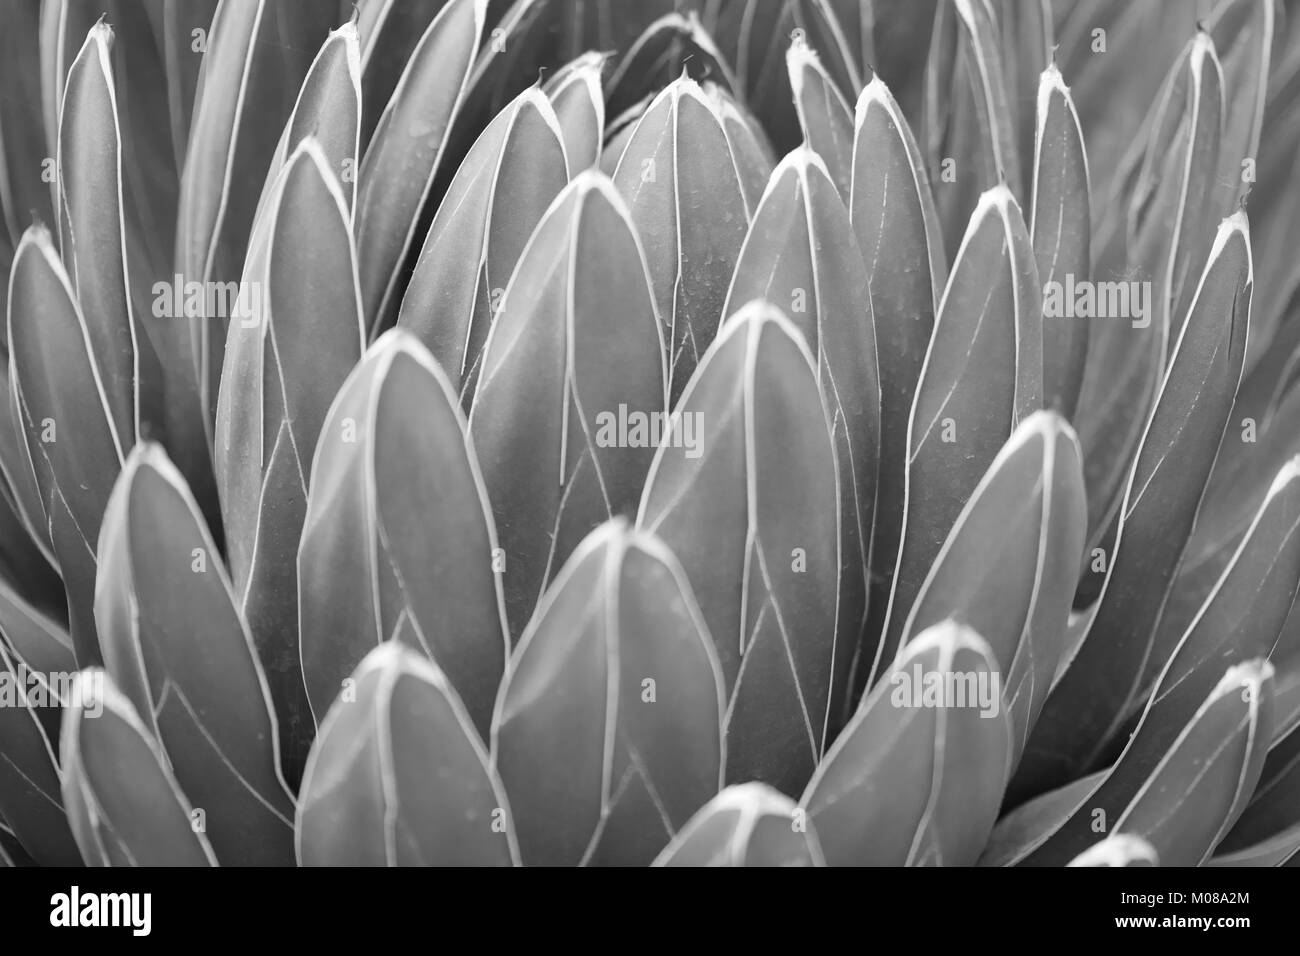 Les feuilles d'Agave victoriae reginae texture background en noir et blanc Banque D'Images